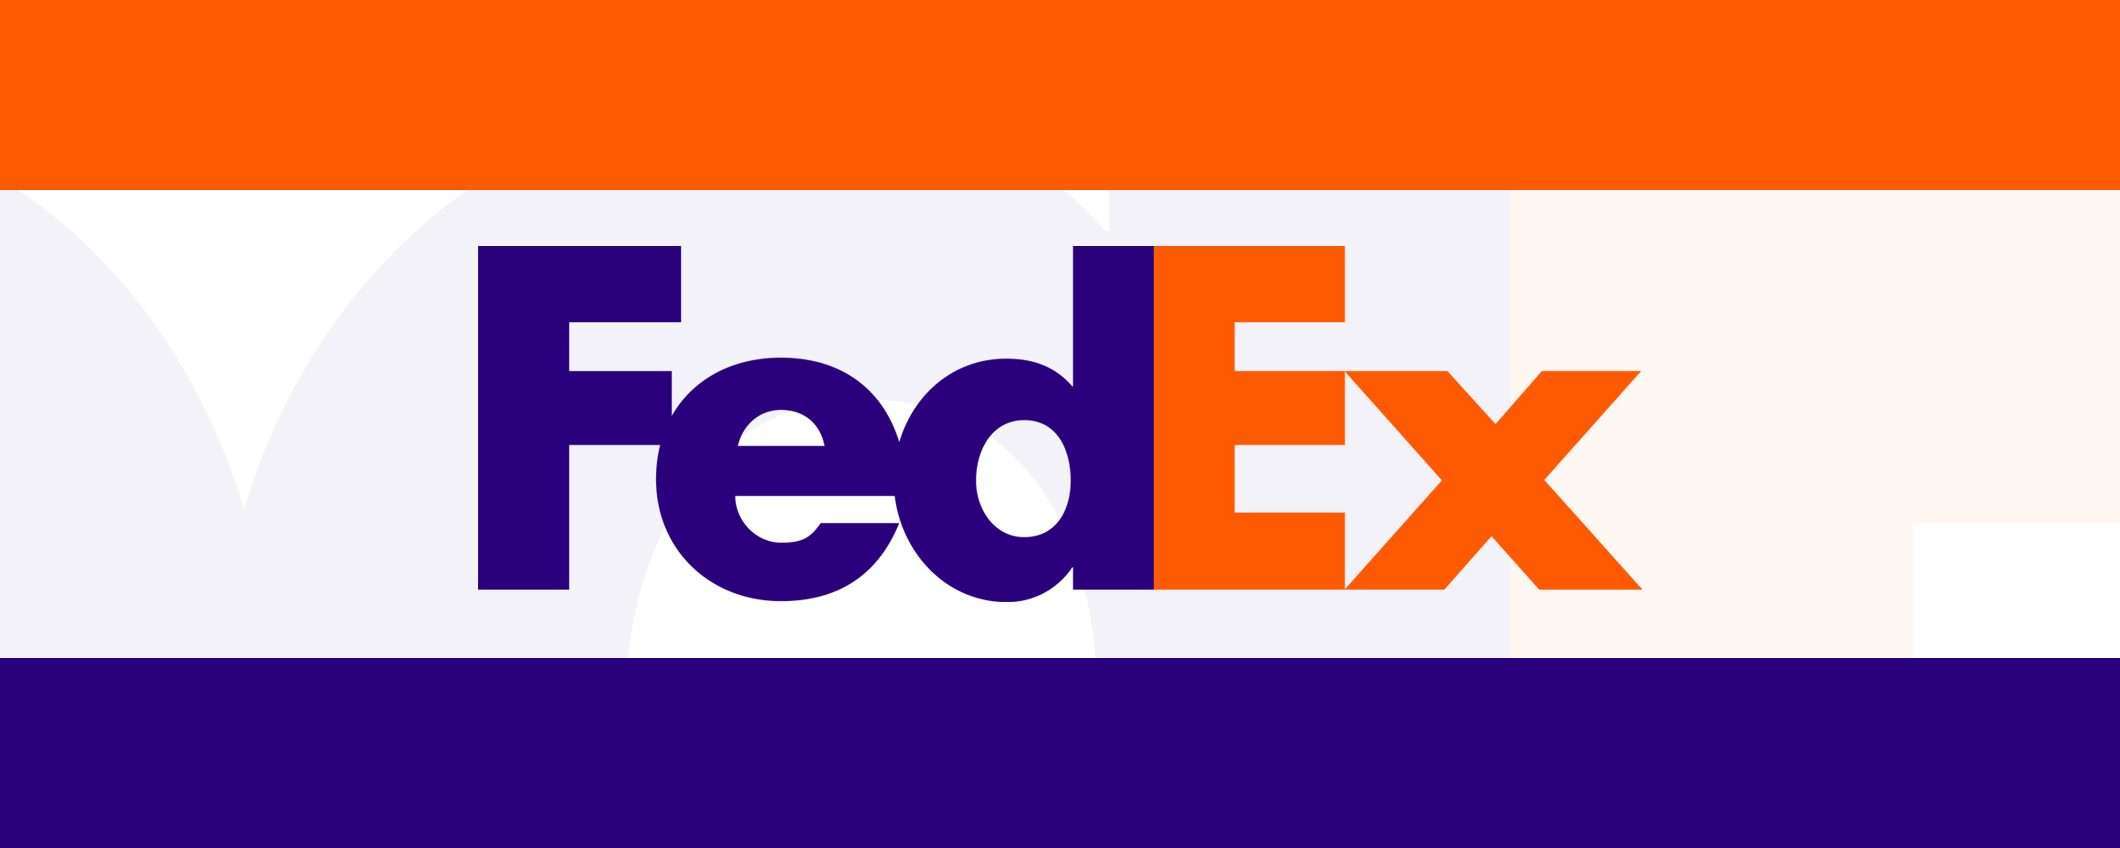 fdx è l'e-commerce di FedEx che sfiderà Amazon